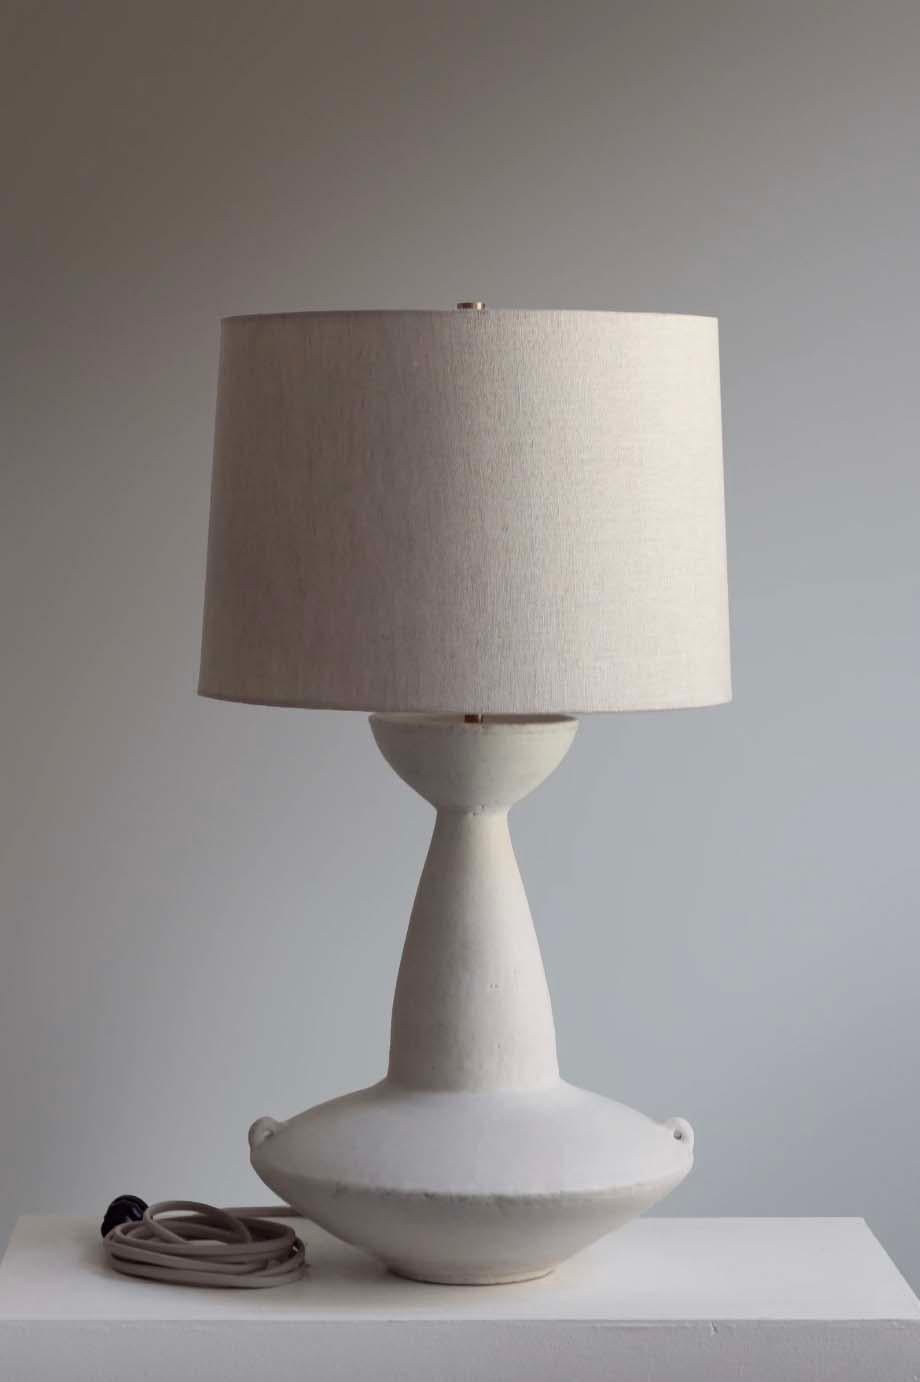 La lámpara Claudius es cerámica de estudio hecha a mano por el artista ceramista Danny Kaplan. Pantalla incluida. Ten en cuenta que las dimensiones exactas pueden variar.

Nacido en Nueva York y criado en Aix-en-Provence (Francia), la pasión de